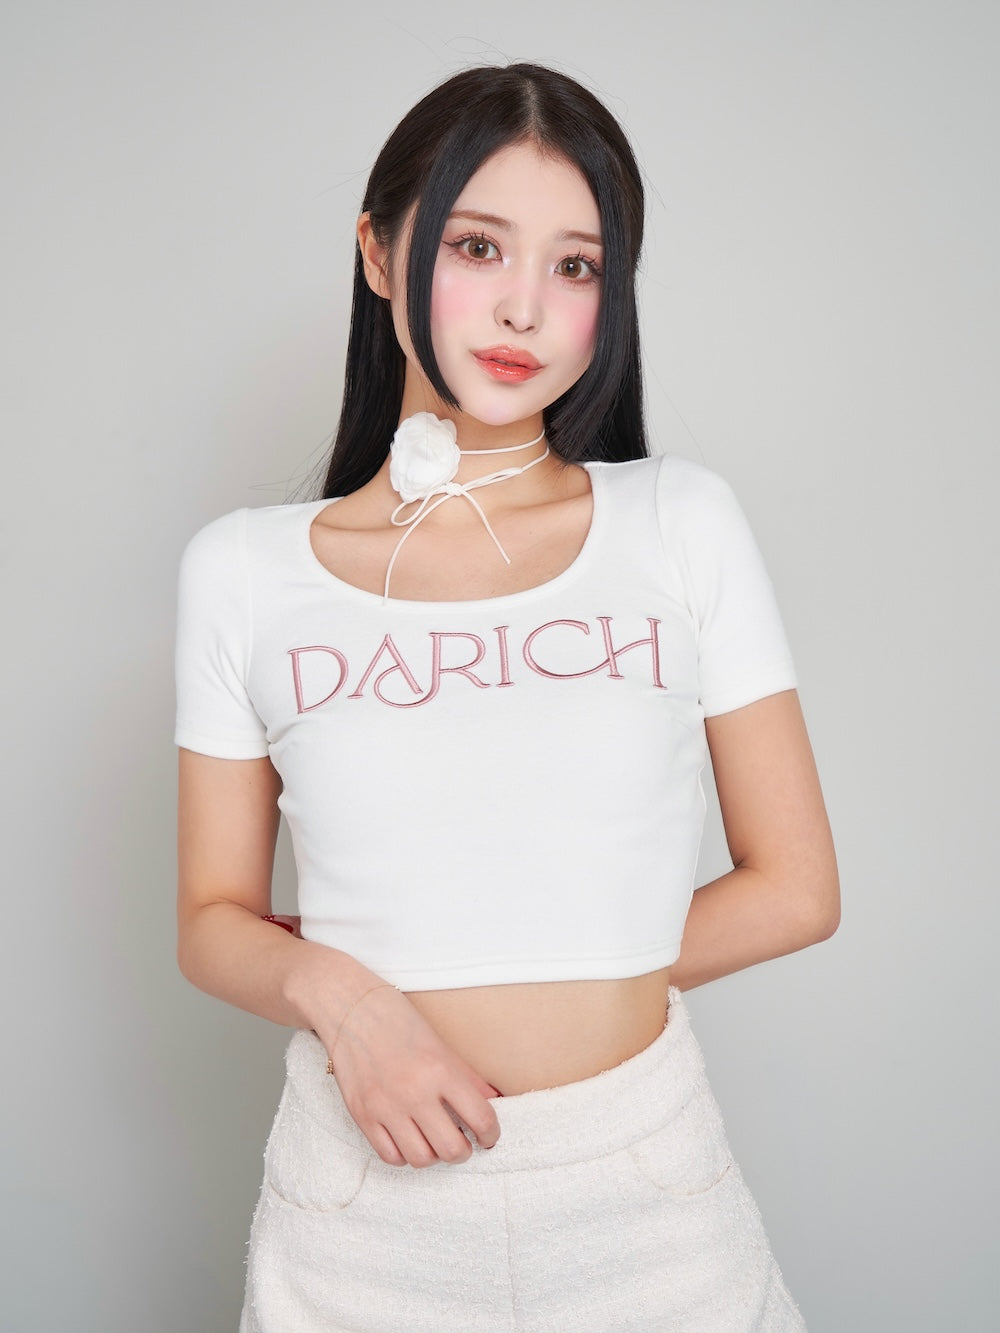 ロゴショートTシャツ – Darich (ダーリッチ)